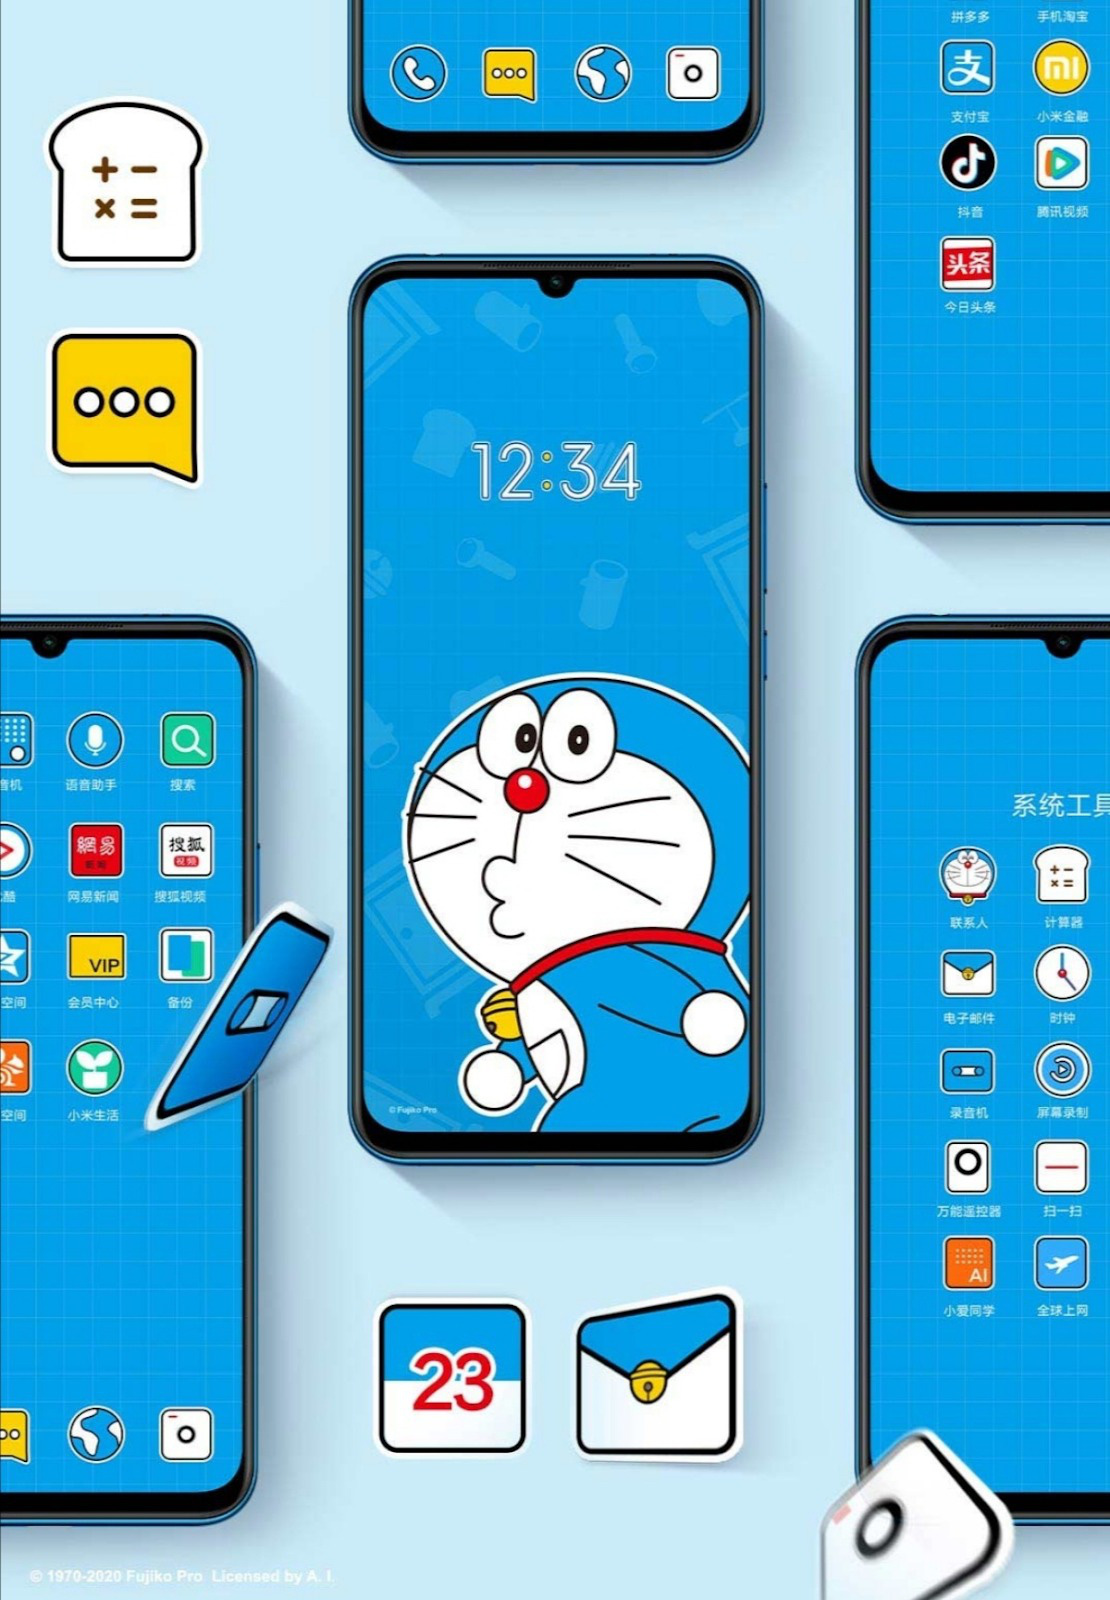 Điện thoại Doraemon của Xiaomi sẽ mang lại cho bạn sự tiện ích và độc đáo chưa từng có. Thiết kế thân thiện, tính năng đa dạng, cùng với nhiều ưu đãi hấp dẫn, sẽ khiến bạn không thể phản kháng. Hãy cùng khám phá những trải nghiệm đầy thú vị của sản phẩm này qua những hình ảnh độc quyền.